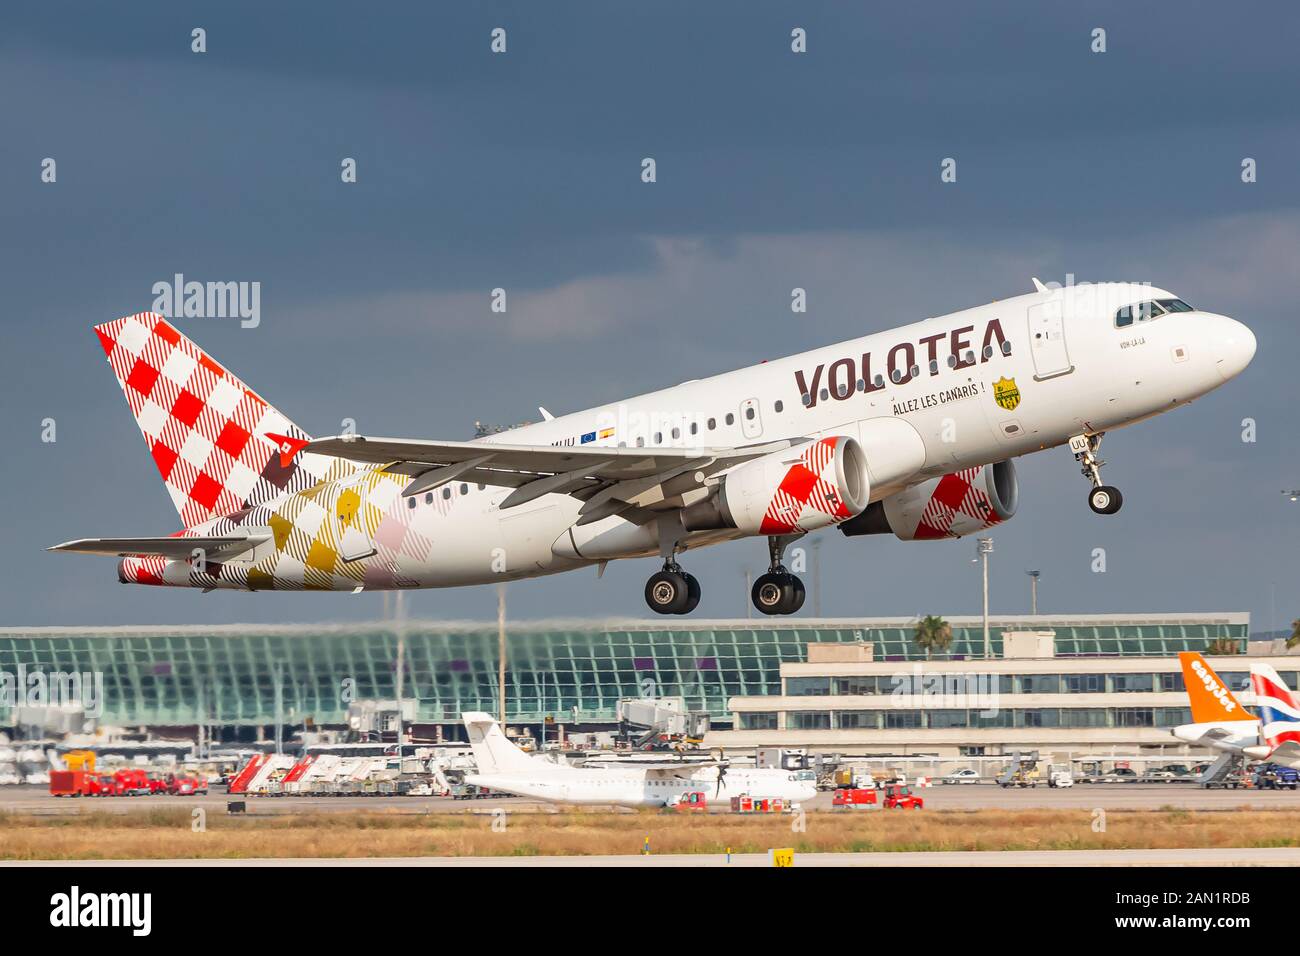 Palma de Mallorca, Spagna - 21 luglio 2018: Volo Airbus A319 all'aeroporto di Palma de Mallorca (PMI) in Spagna. Airbus è un costruttore di aeromobili Foto Stock